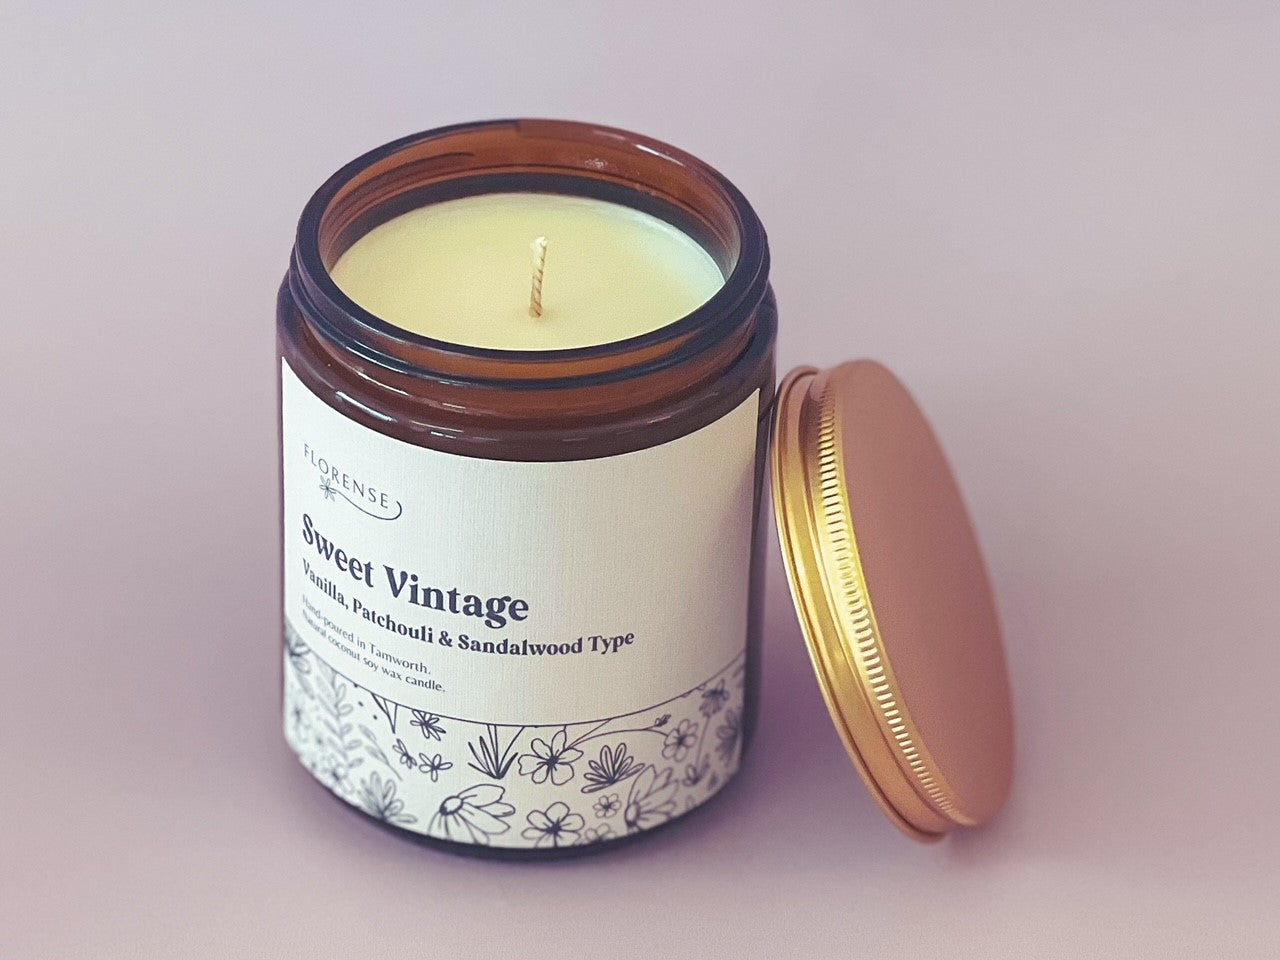 Amber Candle | Sweet Vintage (Vanilla, Patchouli & Sandalwood type)